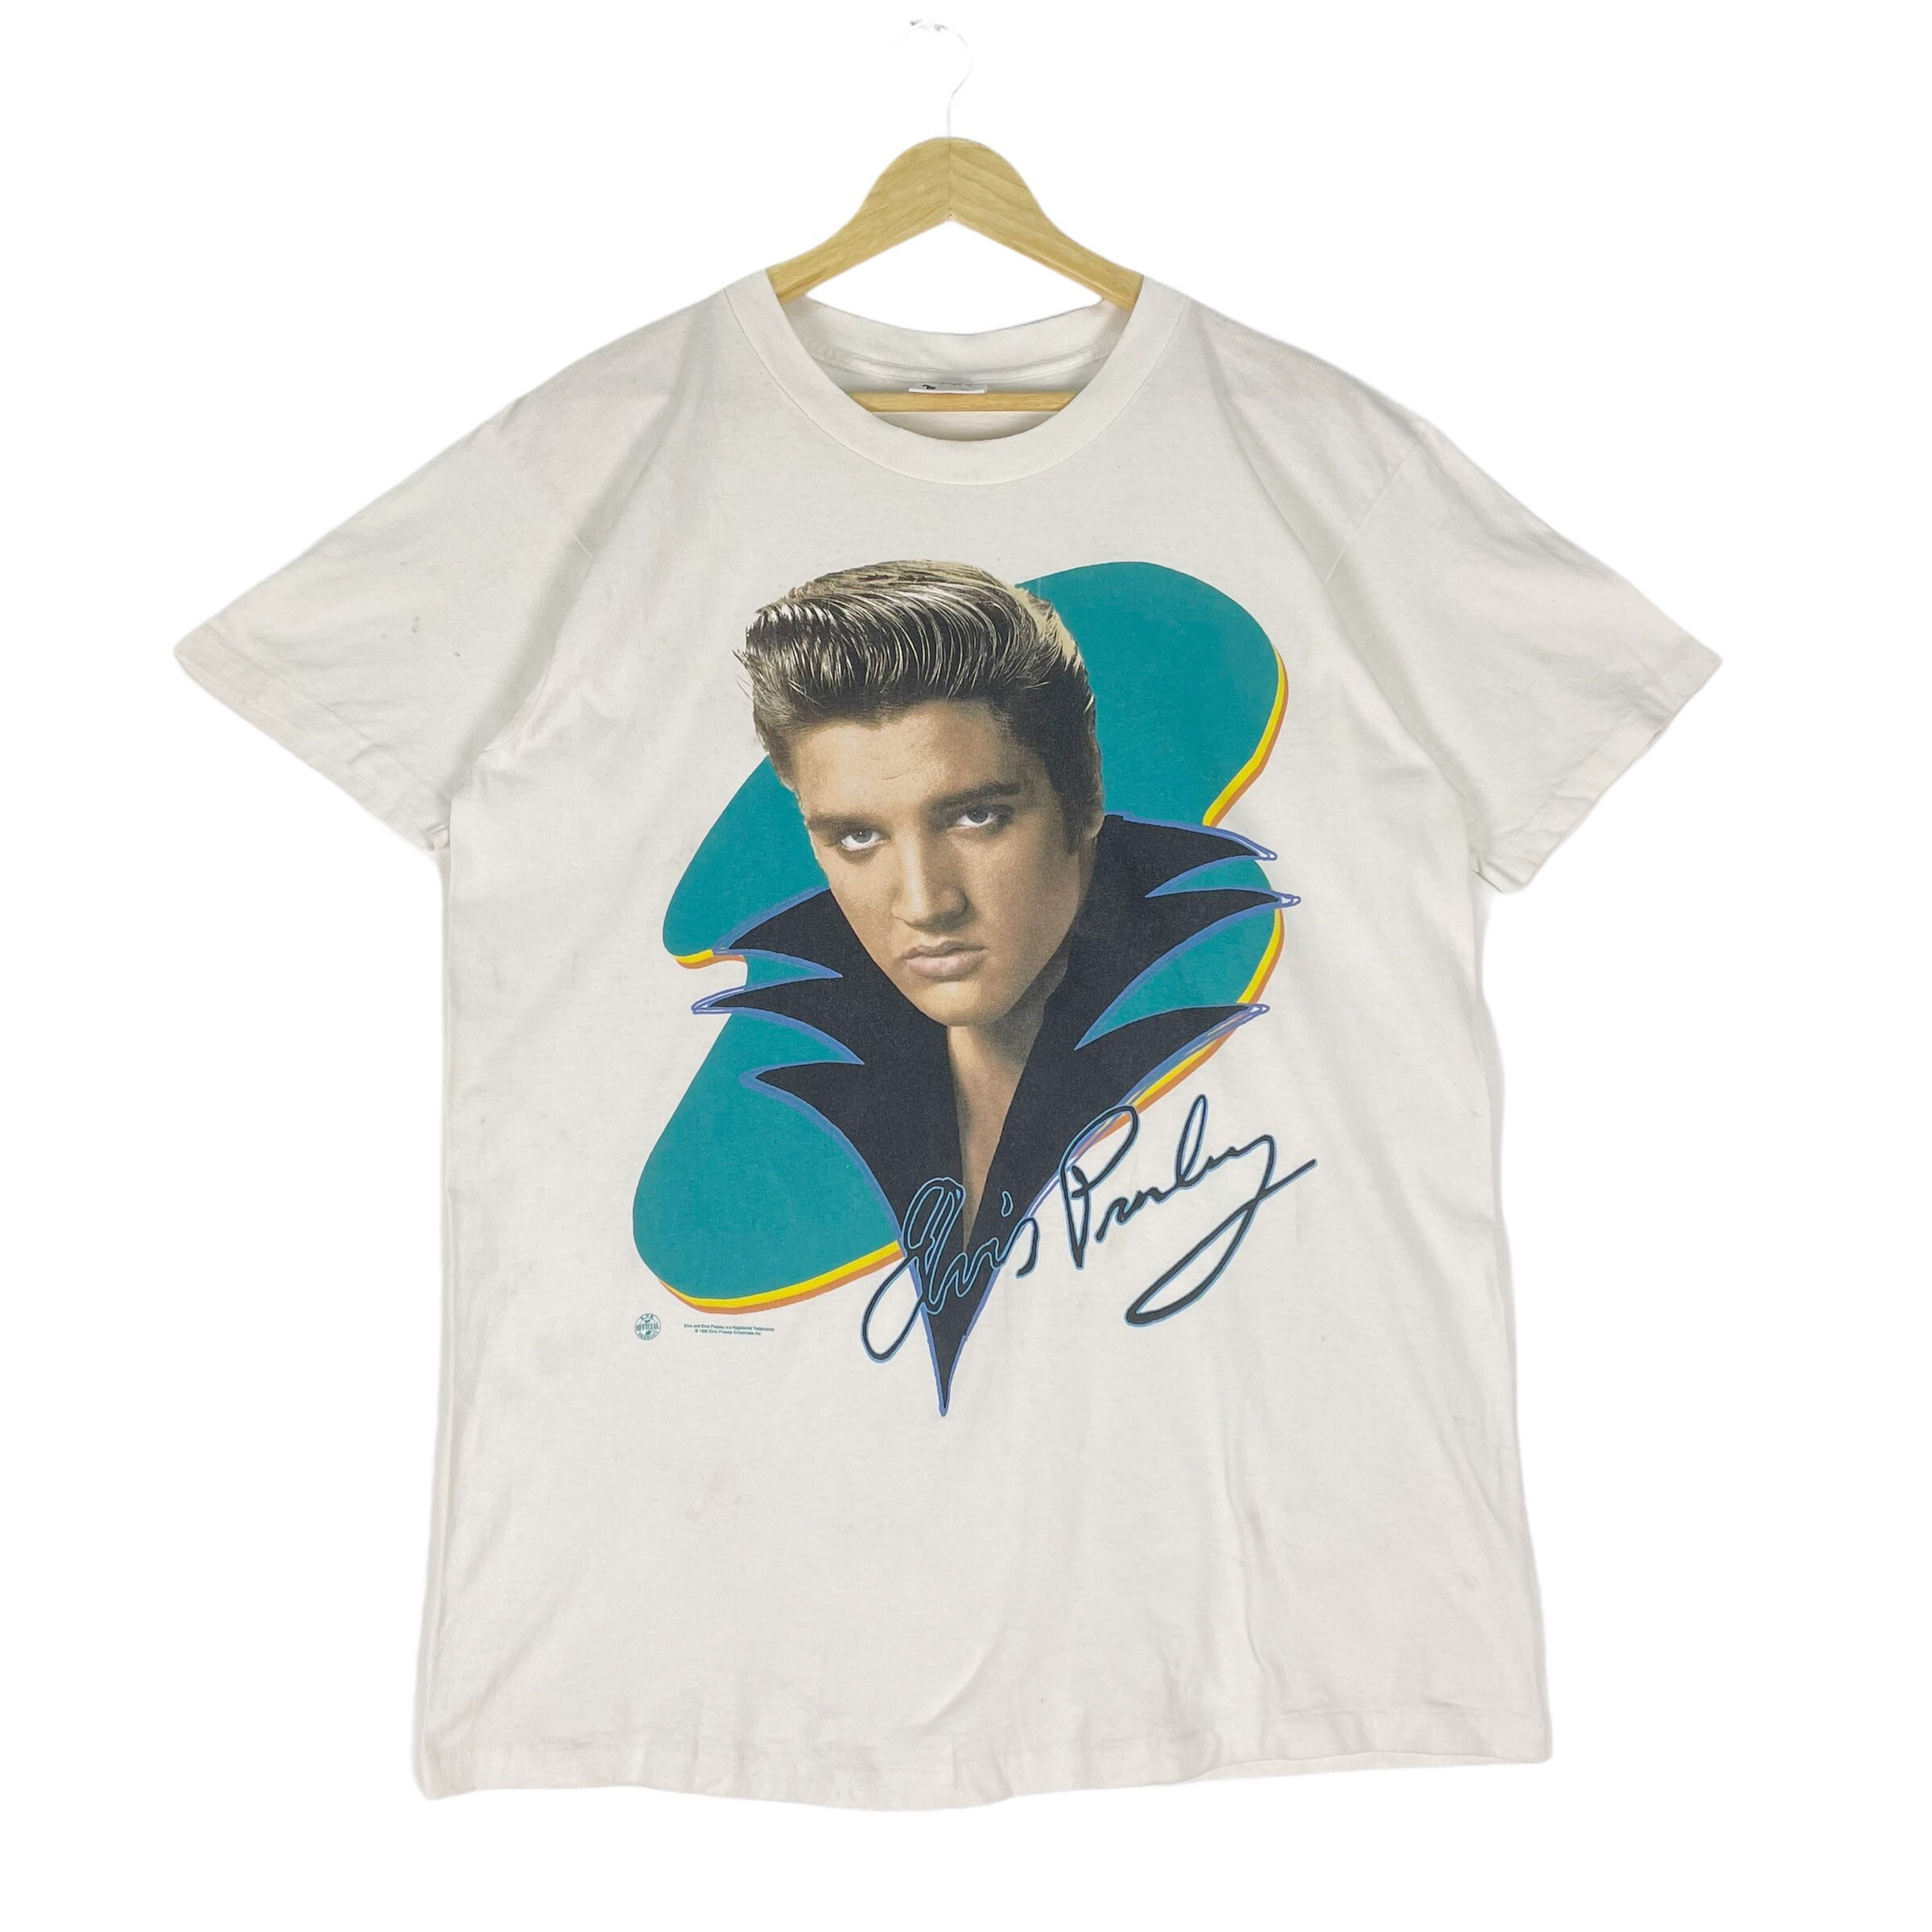 Vintage 1990s Elvis Presley Music T Shirt Size Large